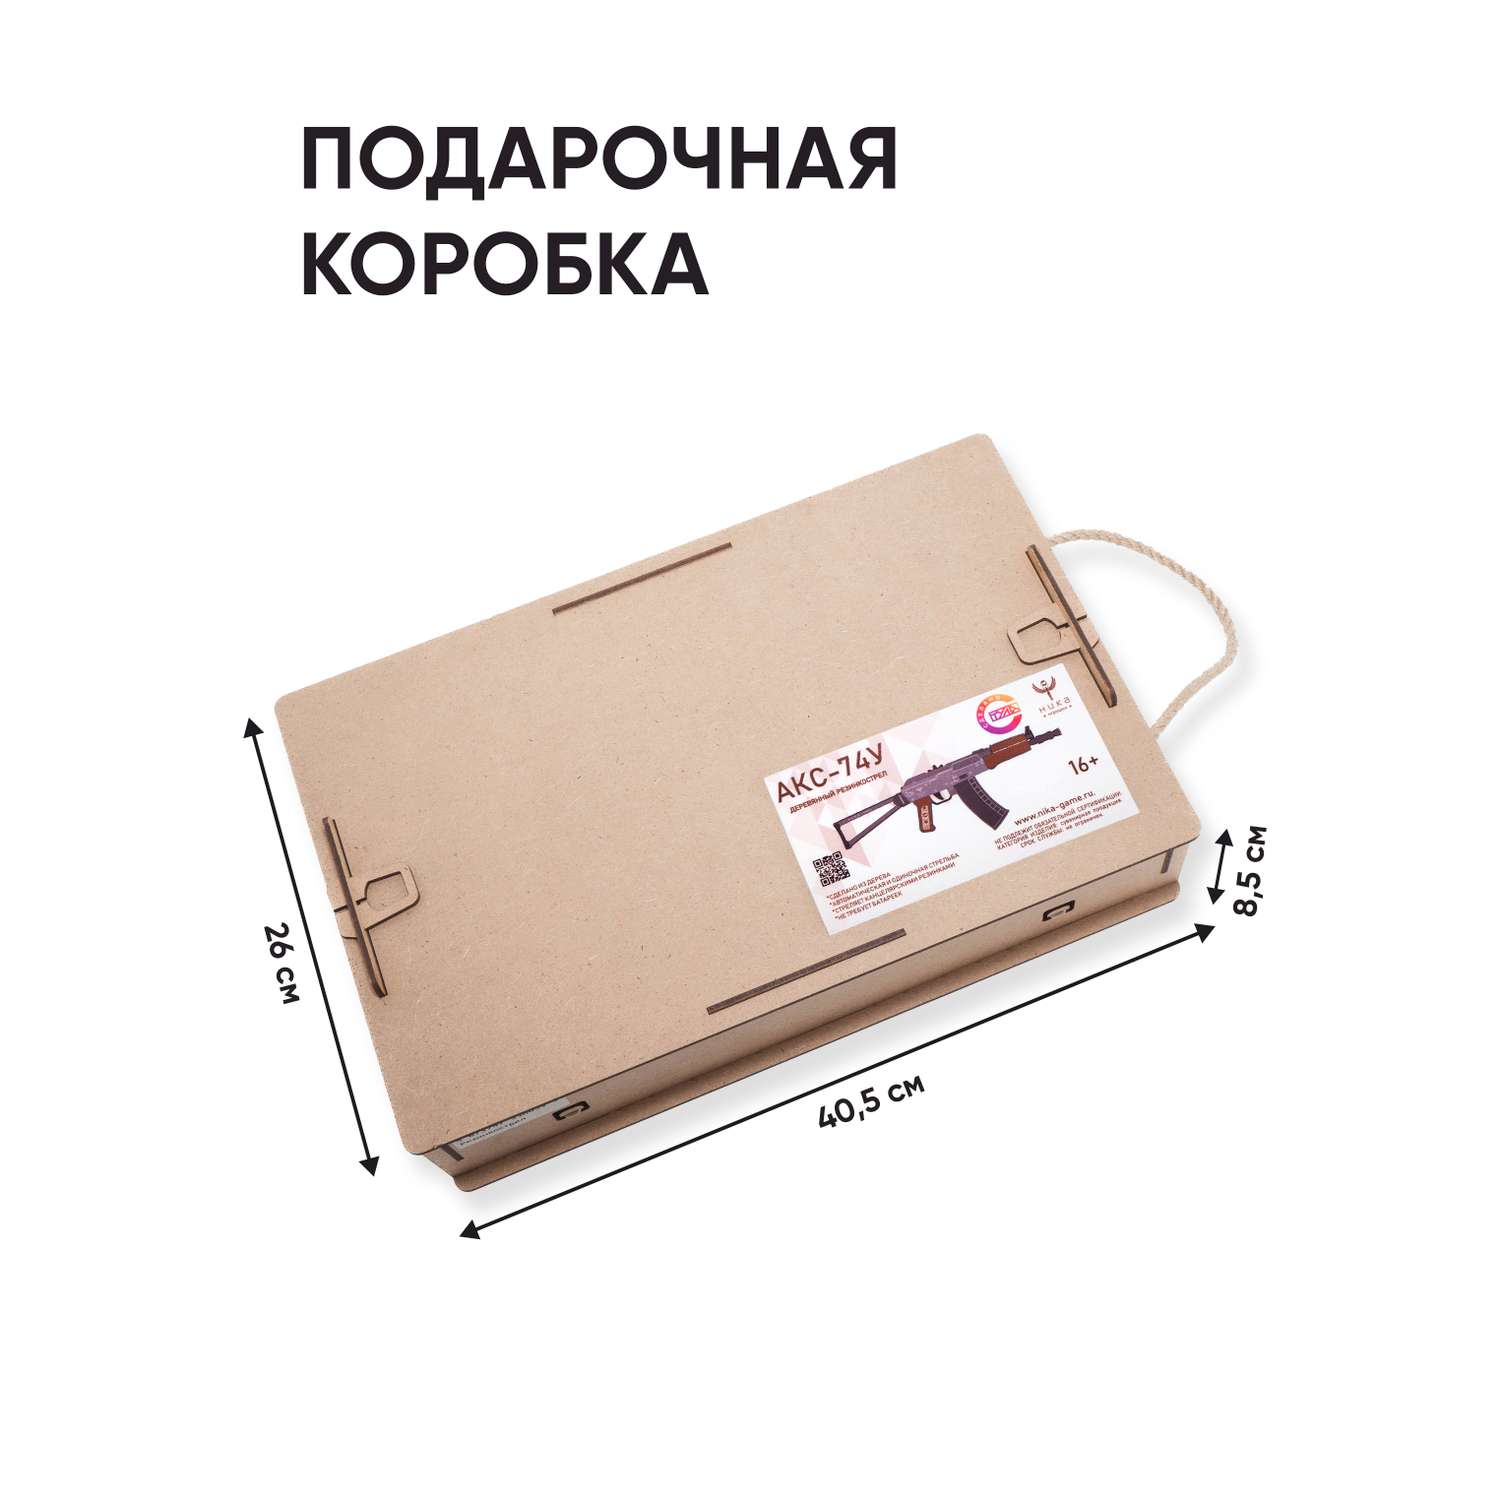 Резинкострел НИКА игрушки Автомат АКС-74У в подарочной упаковке - фото 6